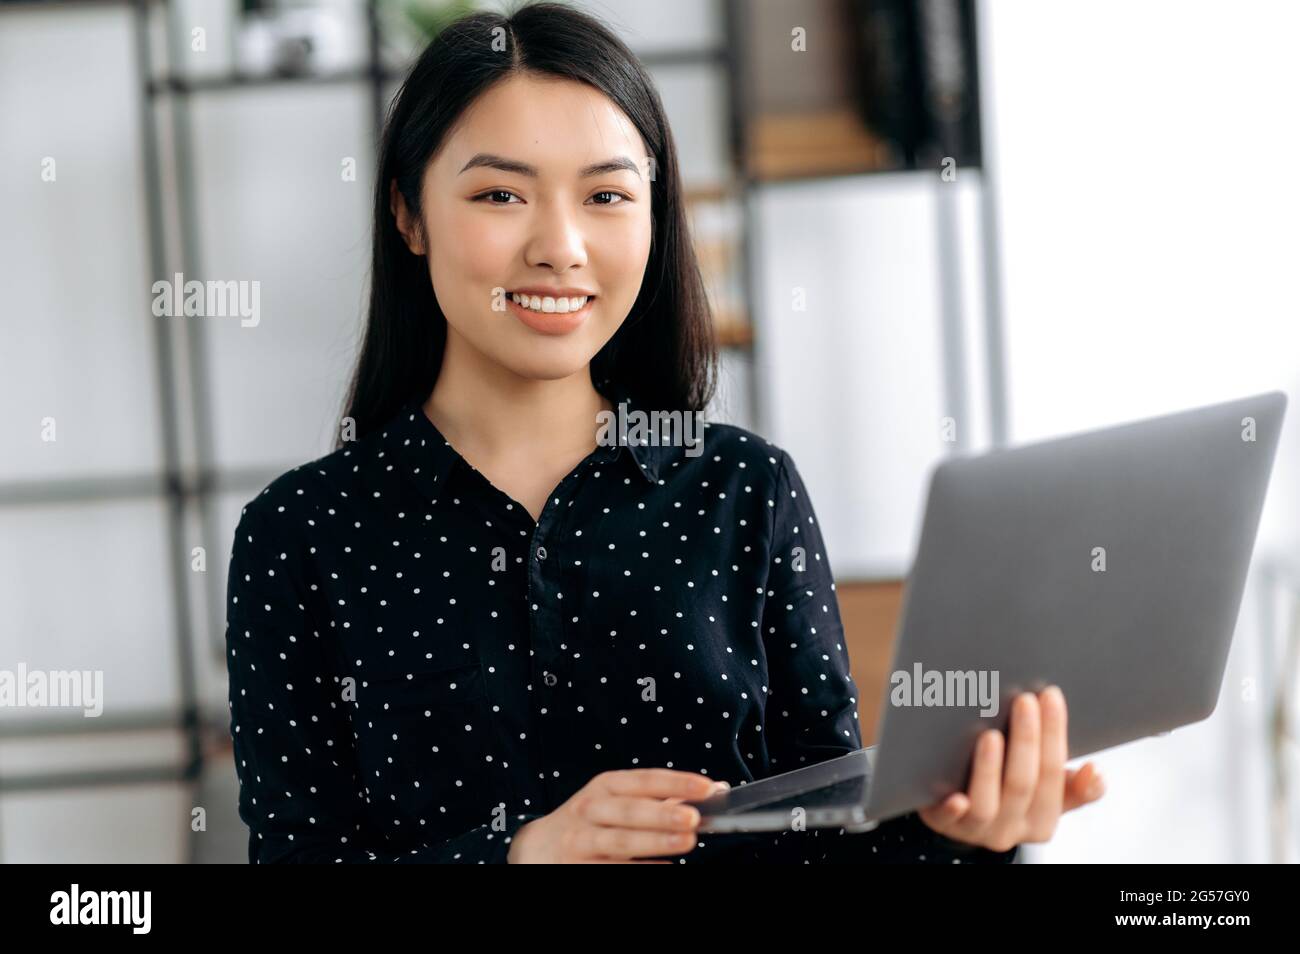 Porträt von niedlichen erfolgreichen asiatischen jungen Geschäftsfrau, Manager oder Freiberufler. Japanisches oder chinesisches Mädchen steht im Büro, in stilvoller Kleidung, hält einen offenen Laptop in den Händen, blickt auf die Kamera und lächelt Stockfoto